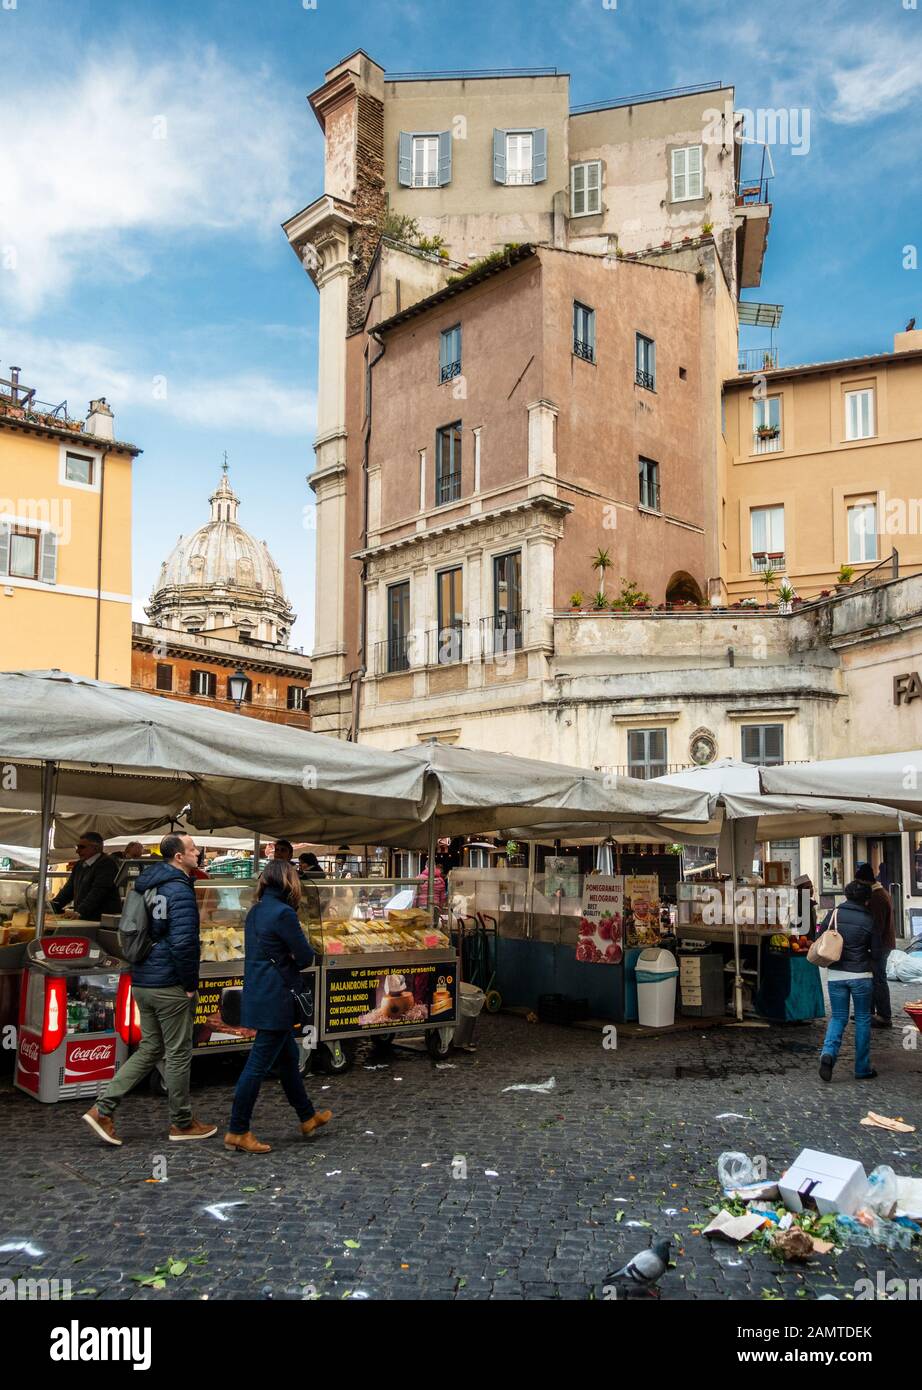 Roma, Italia - 24 marzo 2018: Gli acquirenti curiosano tra le bancarelle del mercato di campo de' Fiori a Roma. Foto Stock